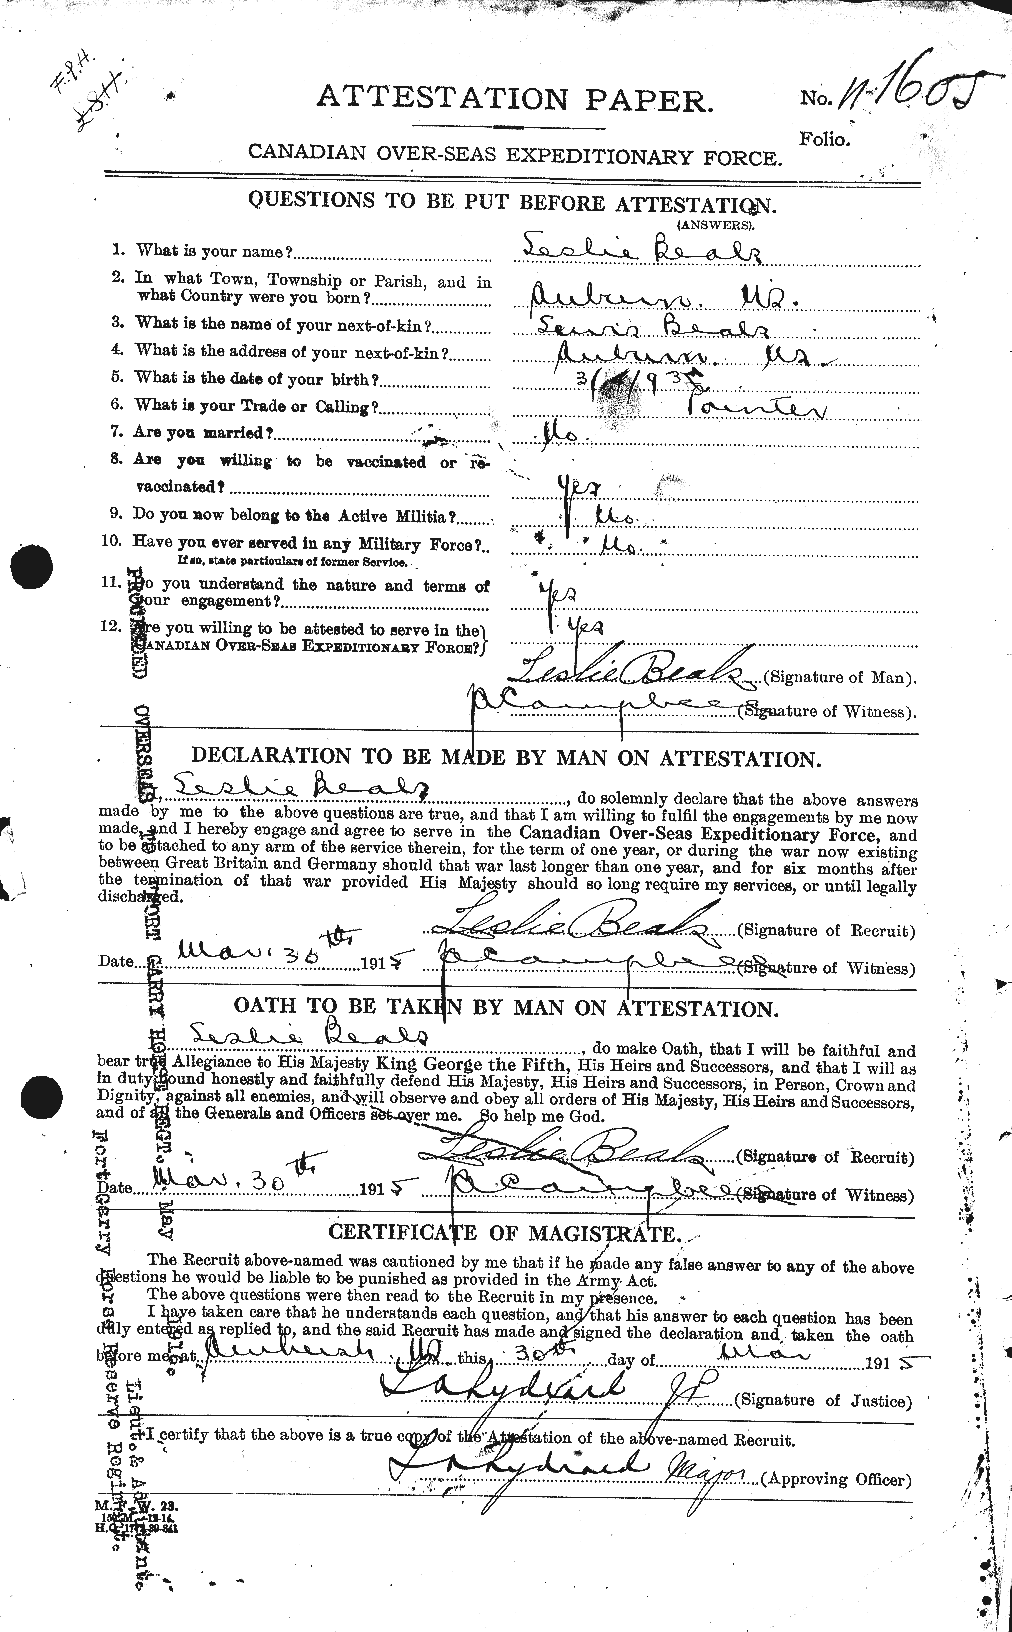 Dossiers du Personnel de la Première Guerre mondiale - CEC 235393a